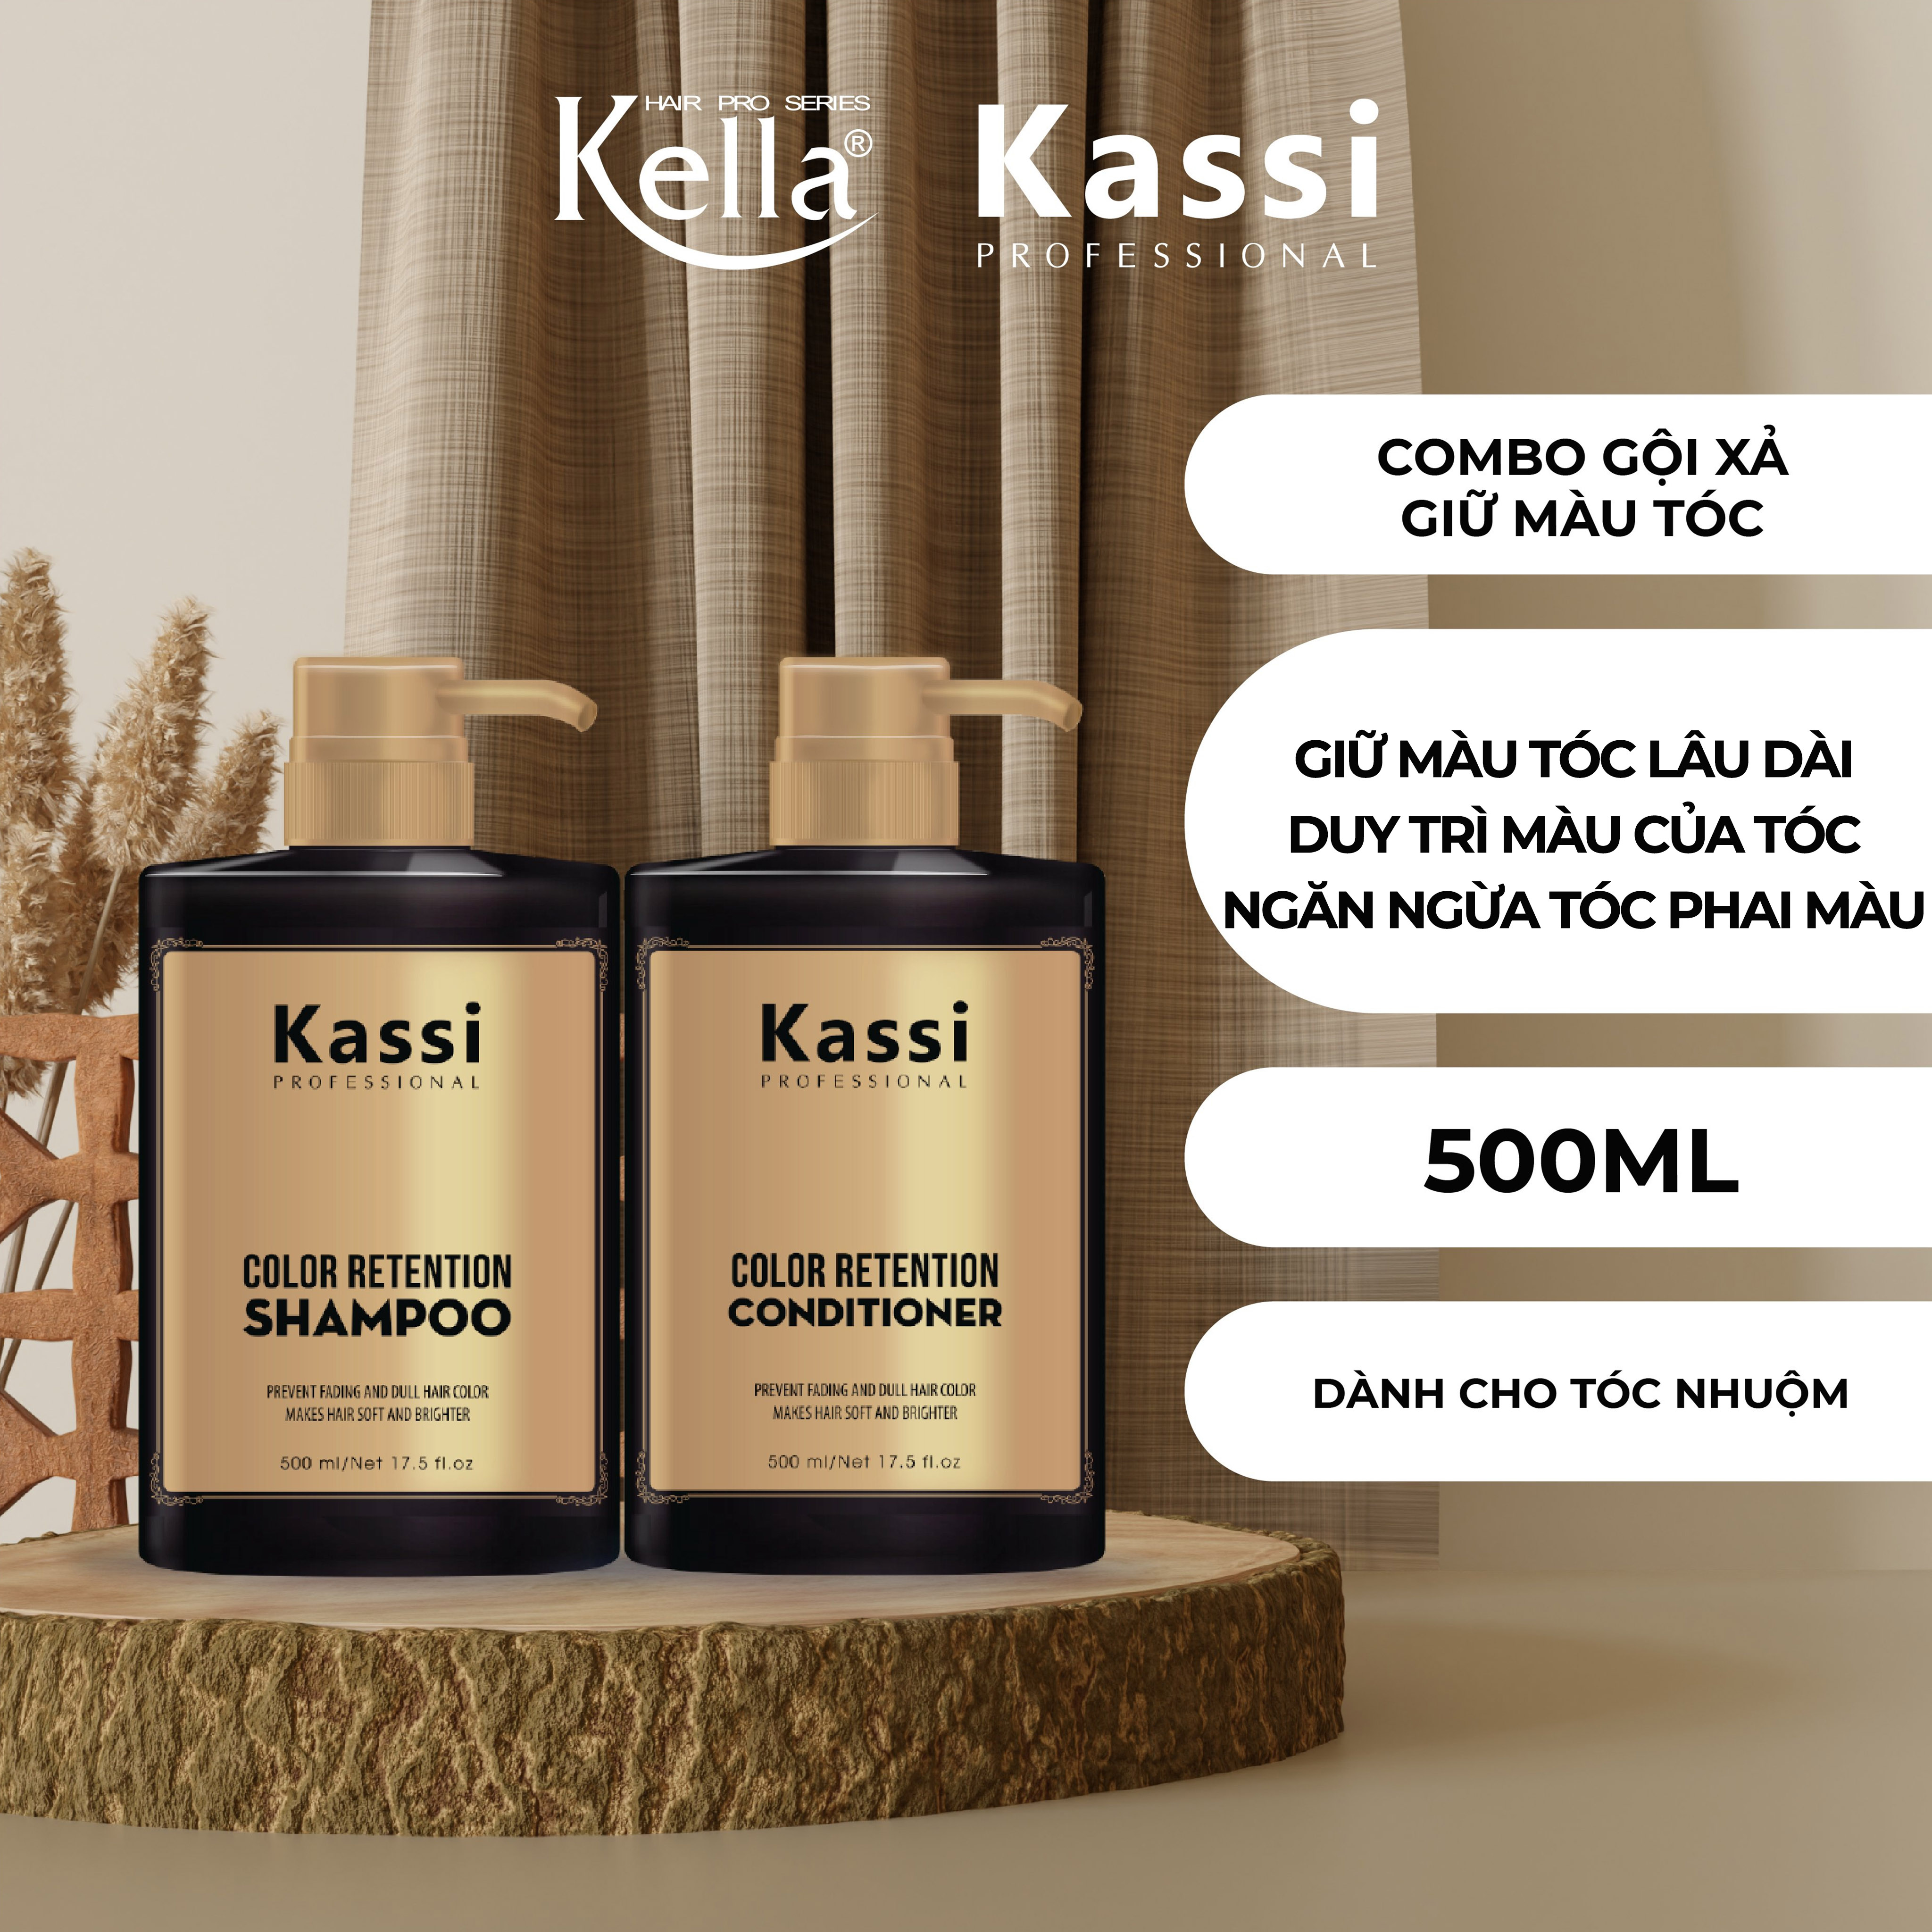 Bạn đang tìm kiếm giá tốt cho chất liệu nhuộm tóc chất lượng? Kassi Nhuộm là sự lựa chọn hoàn hảo với giá cả hợp lý và sản phẩm chất lượng. Đừng bỏ lỡ cơ hội thưởng thức tóc đẹp và khỏe mạnh với giá thành hợp lý này!